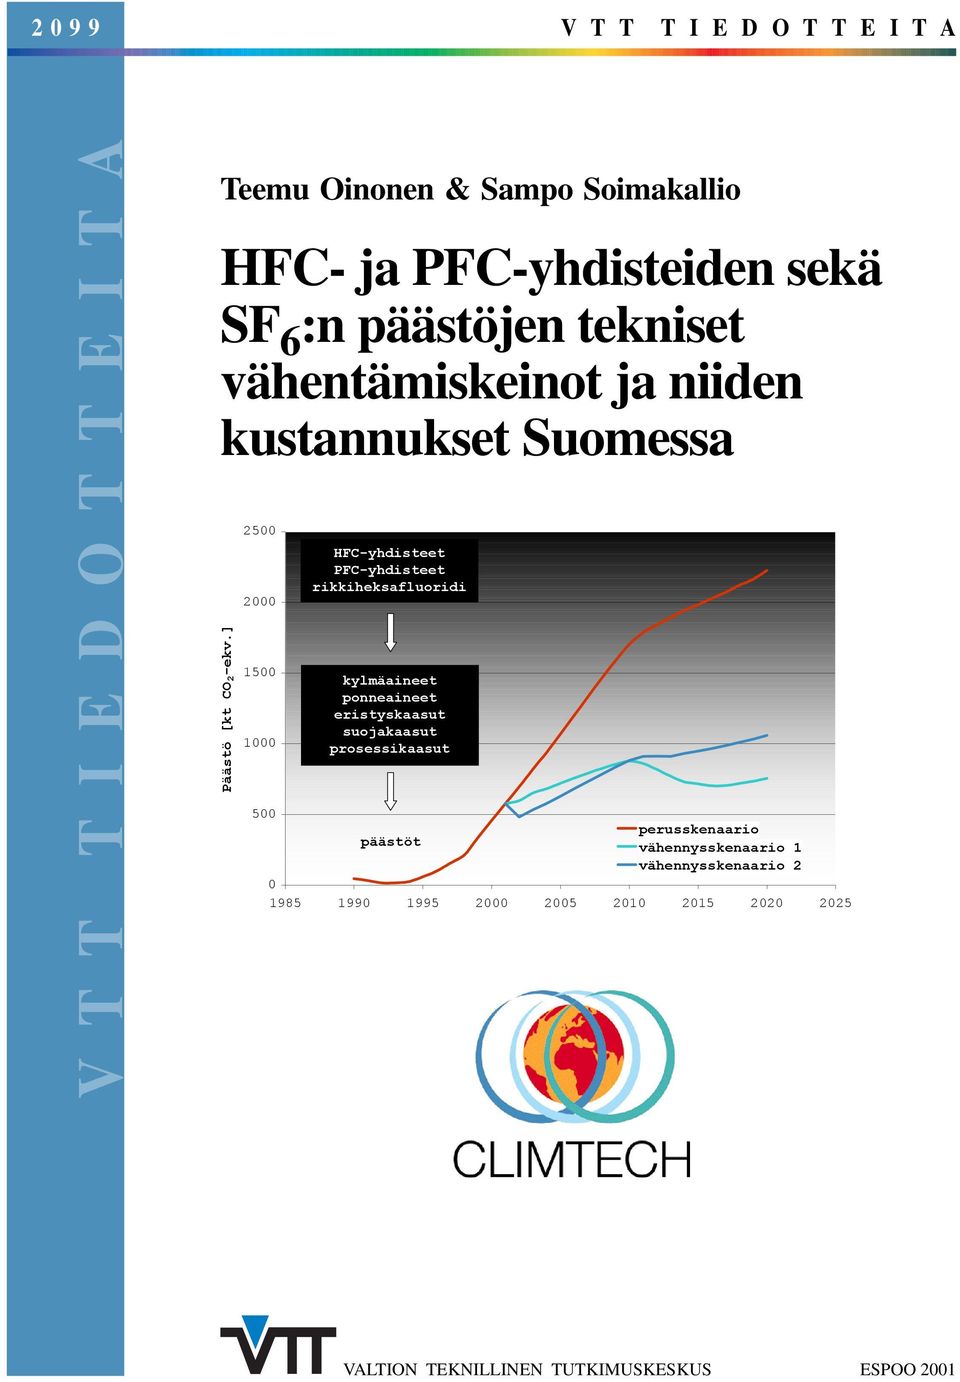 ] 2500 2000 1500 1000 HFC-yhdisteet PFC-yhdisteet rikkiheksafluoridi kylmäaineet ponneaineet eristyskaasut suojakaasut